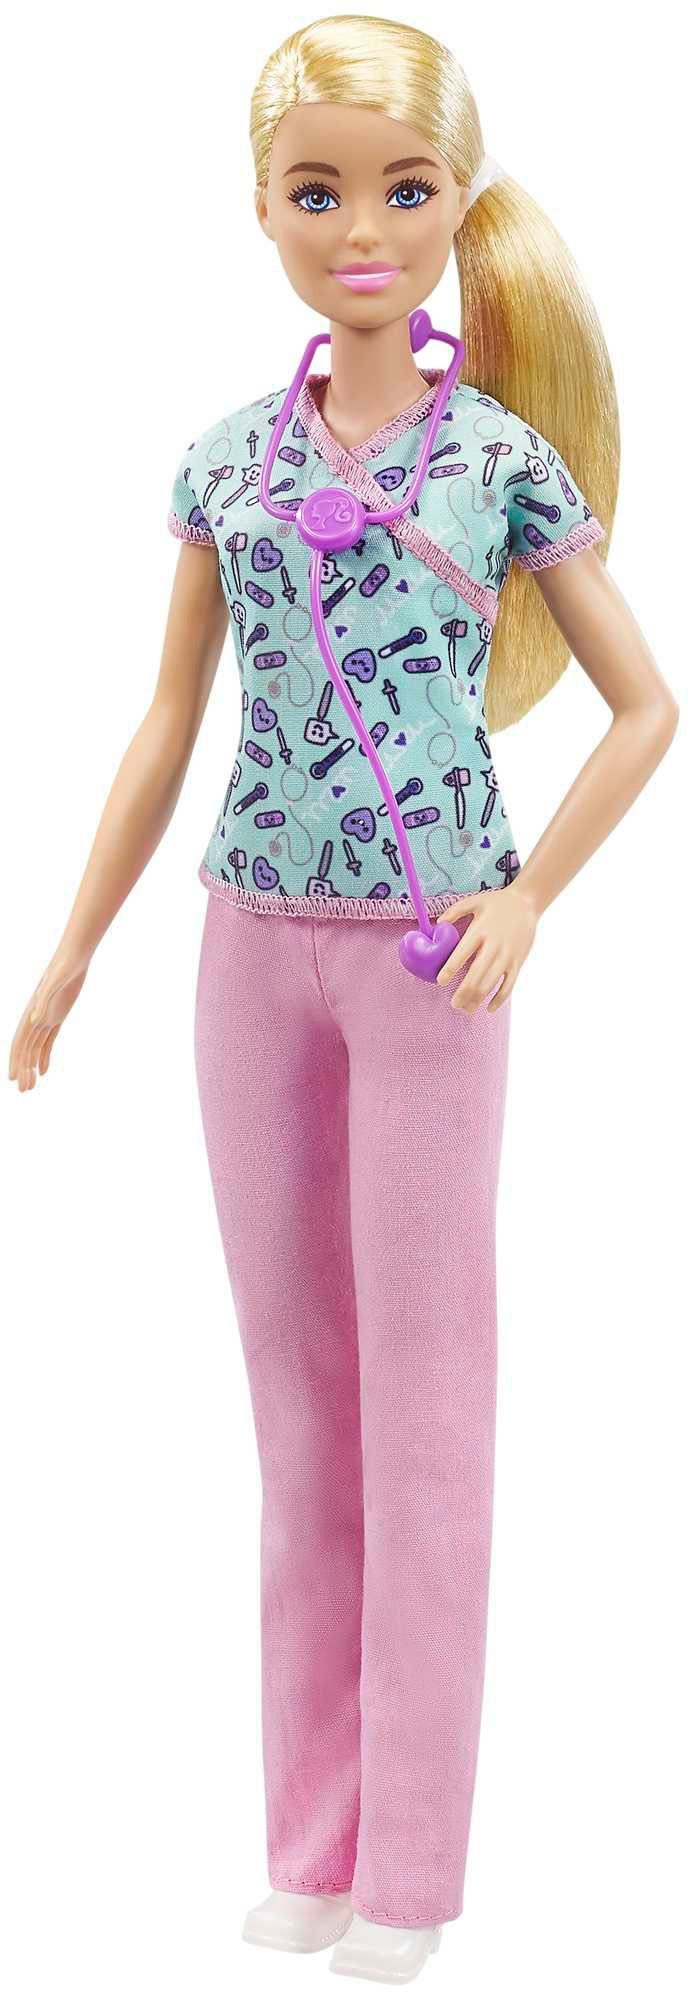 Anziehpuppe Krankenschwester Barbie